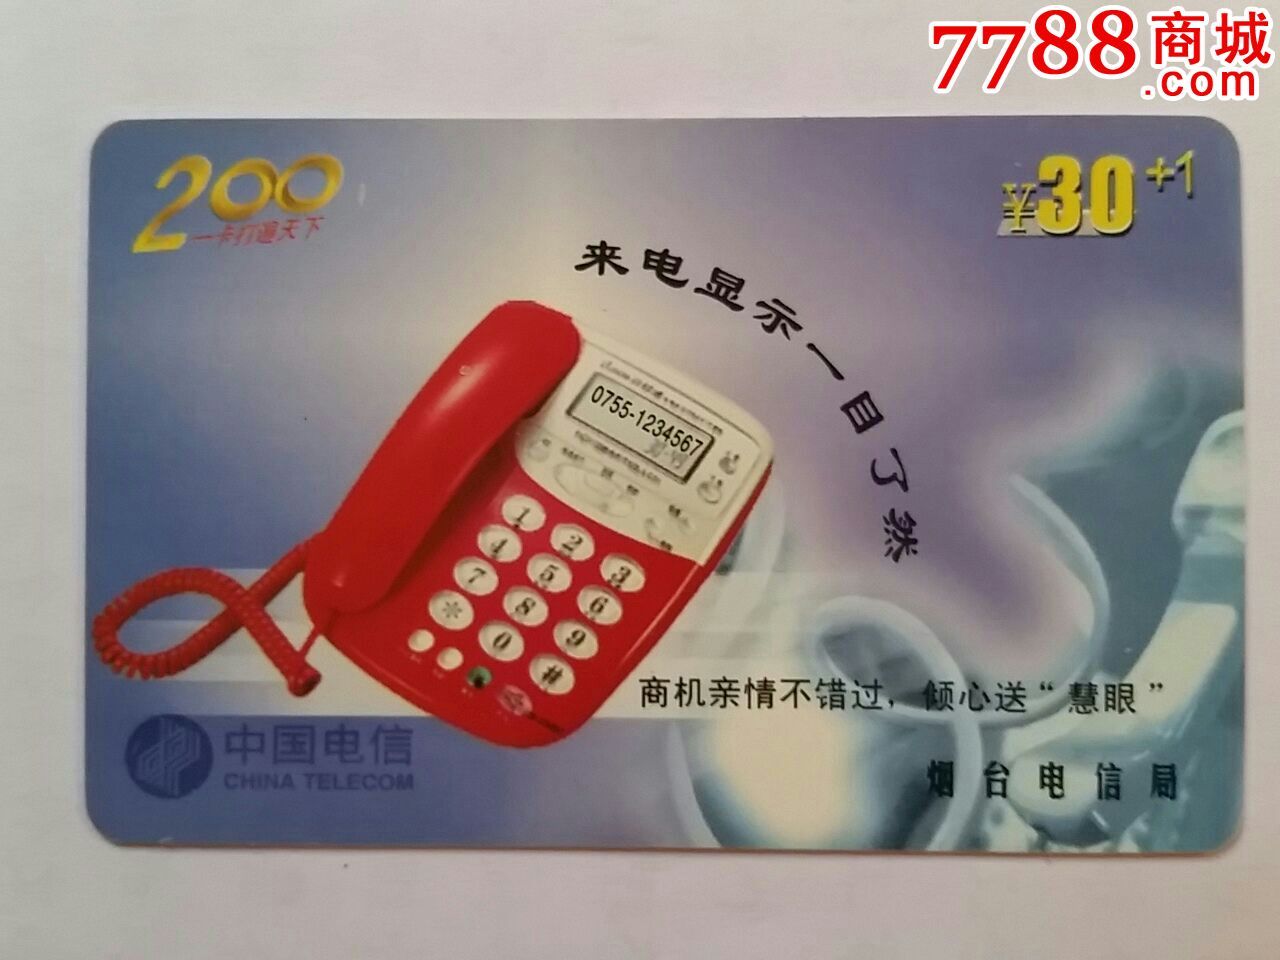 山东烟台校园电话卡-价格:20元-se33665501-I